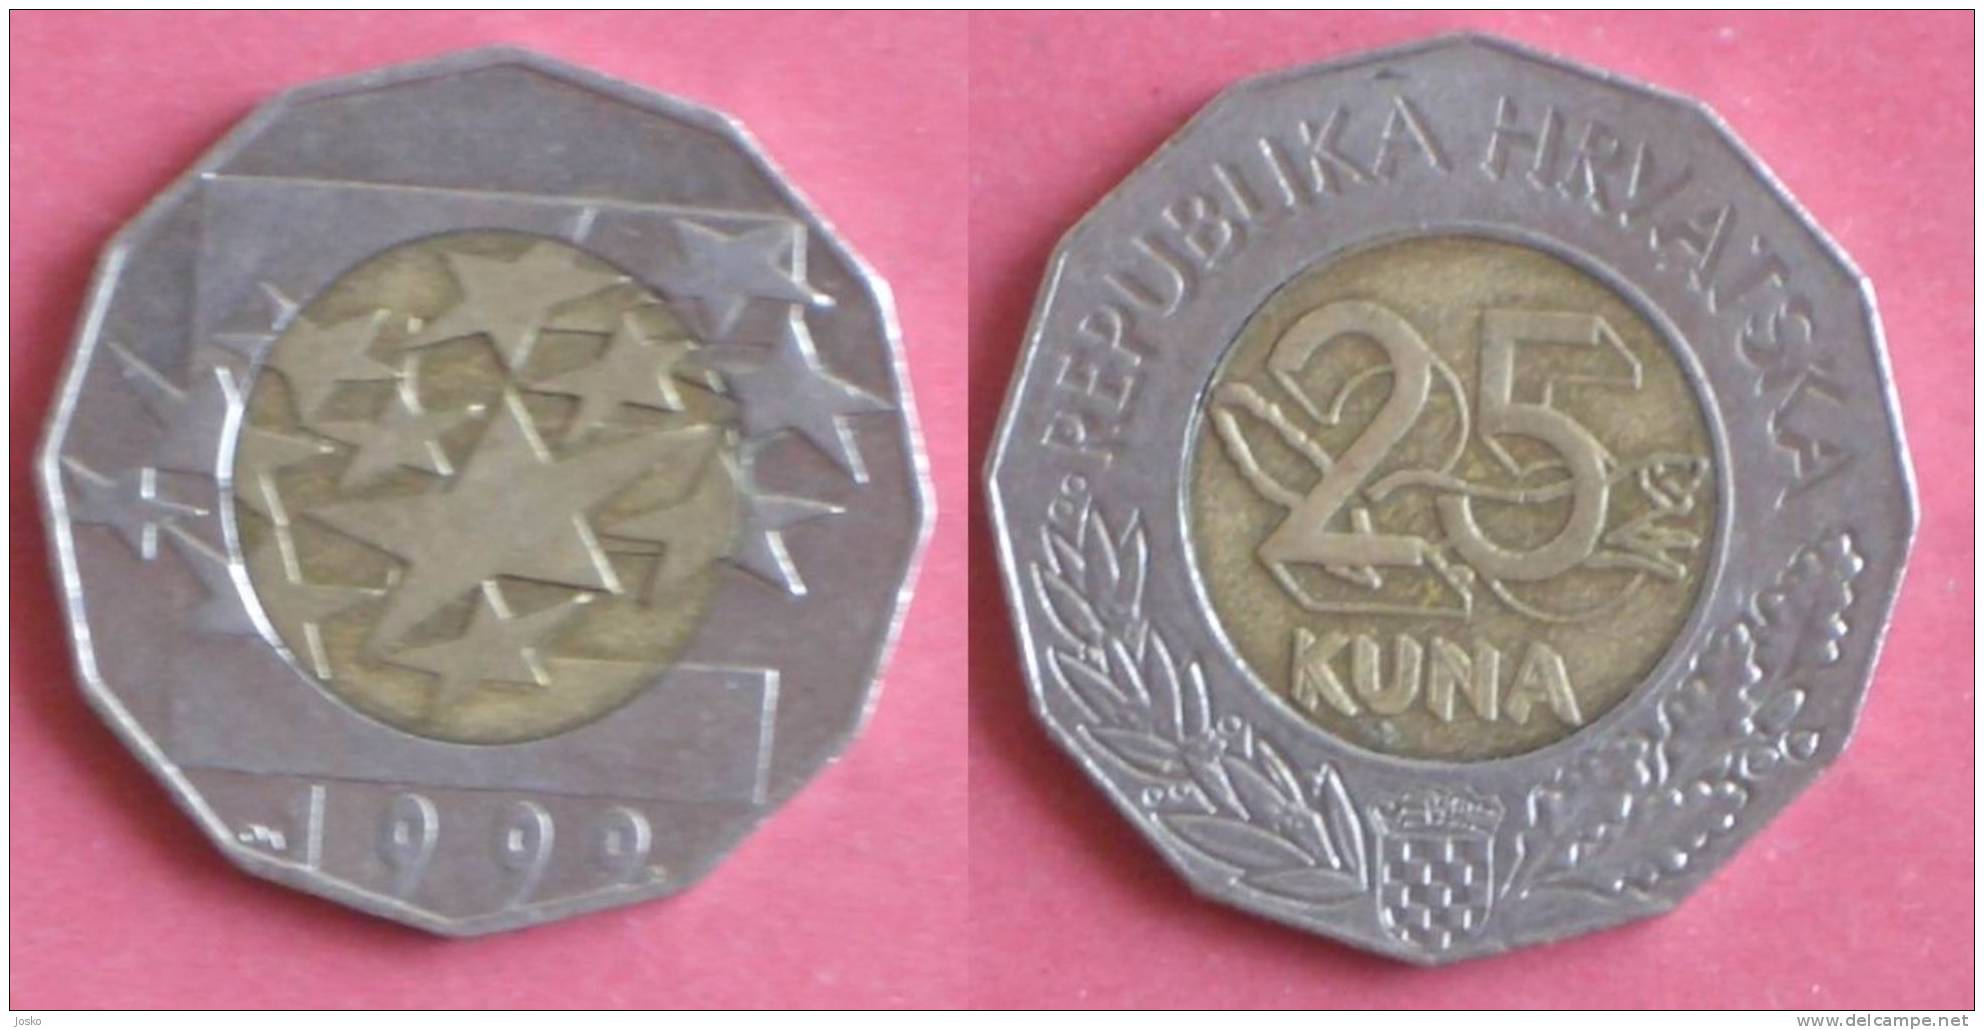 25 KUNA - REGARDING THE INTRODUCTION OF EURO 1999 (Croatia) Bi-metallic Bimétallique Bimetalica Bimetallica Coin Monnaie - Kroatië